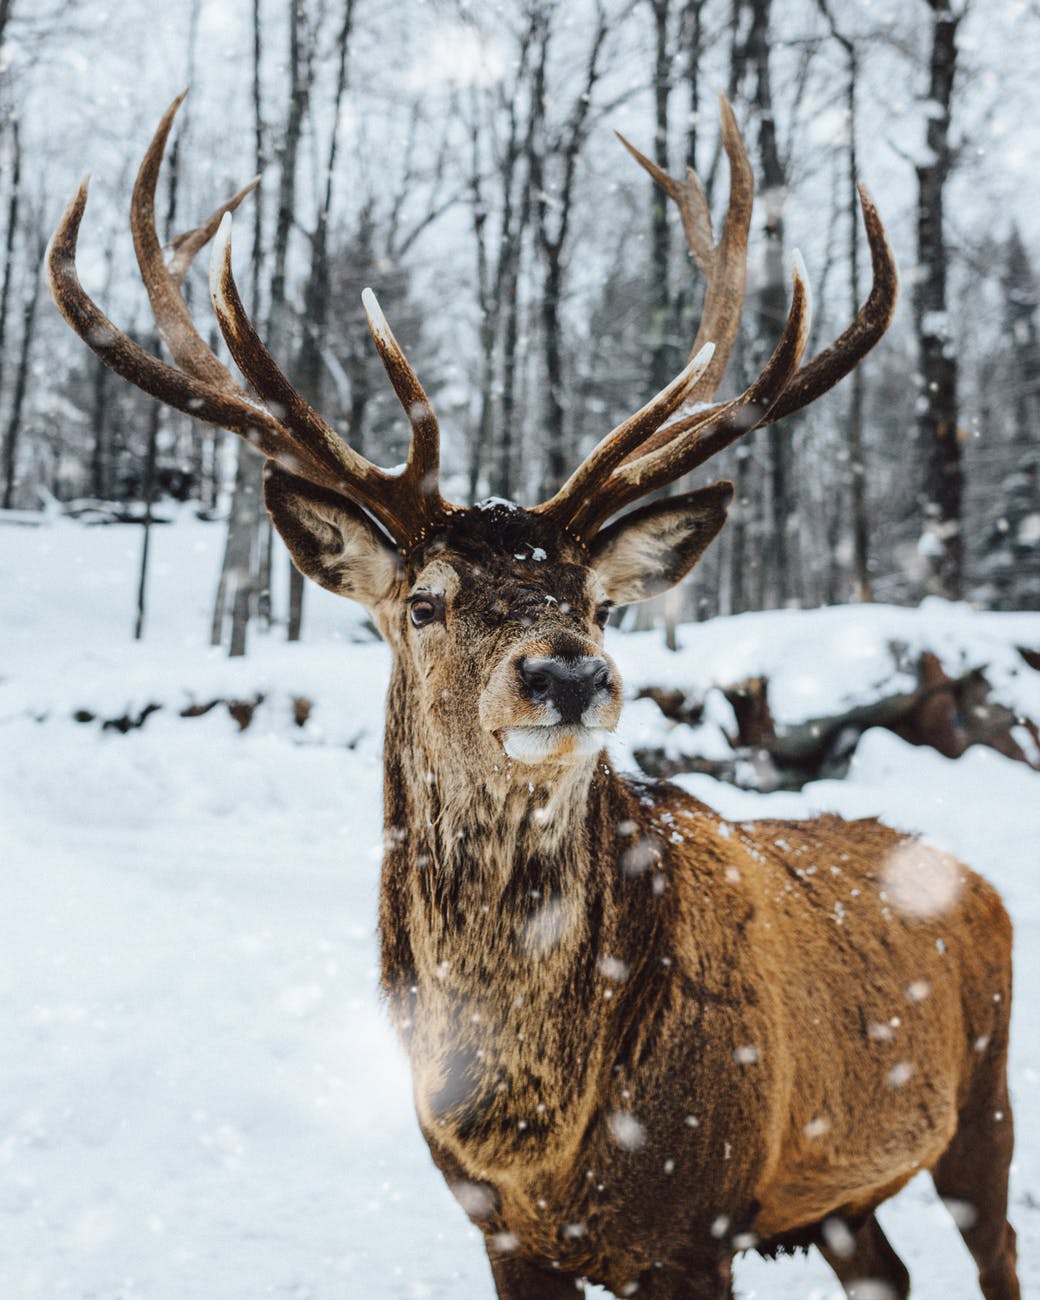 photo of deer on snow